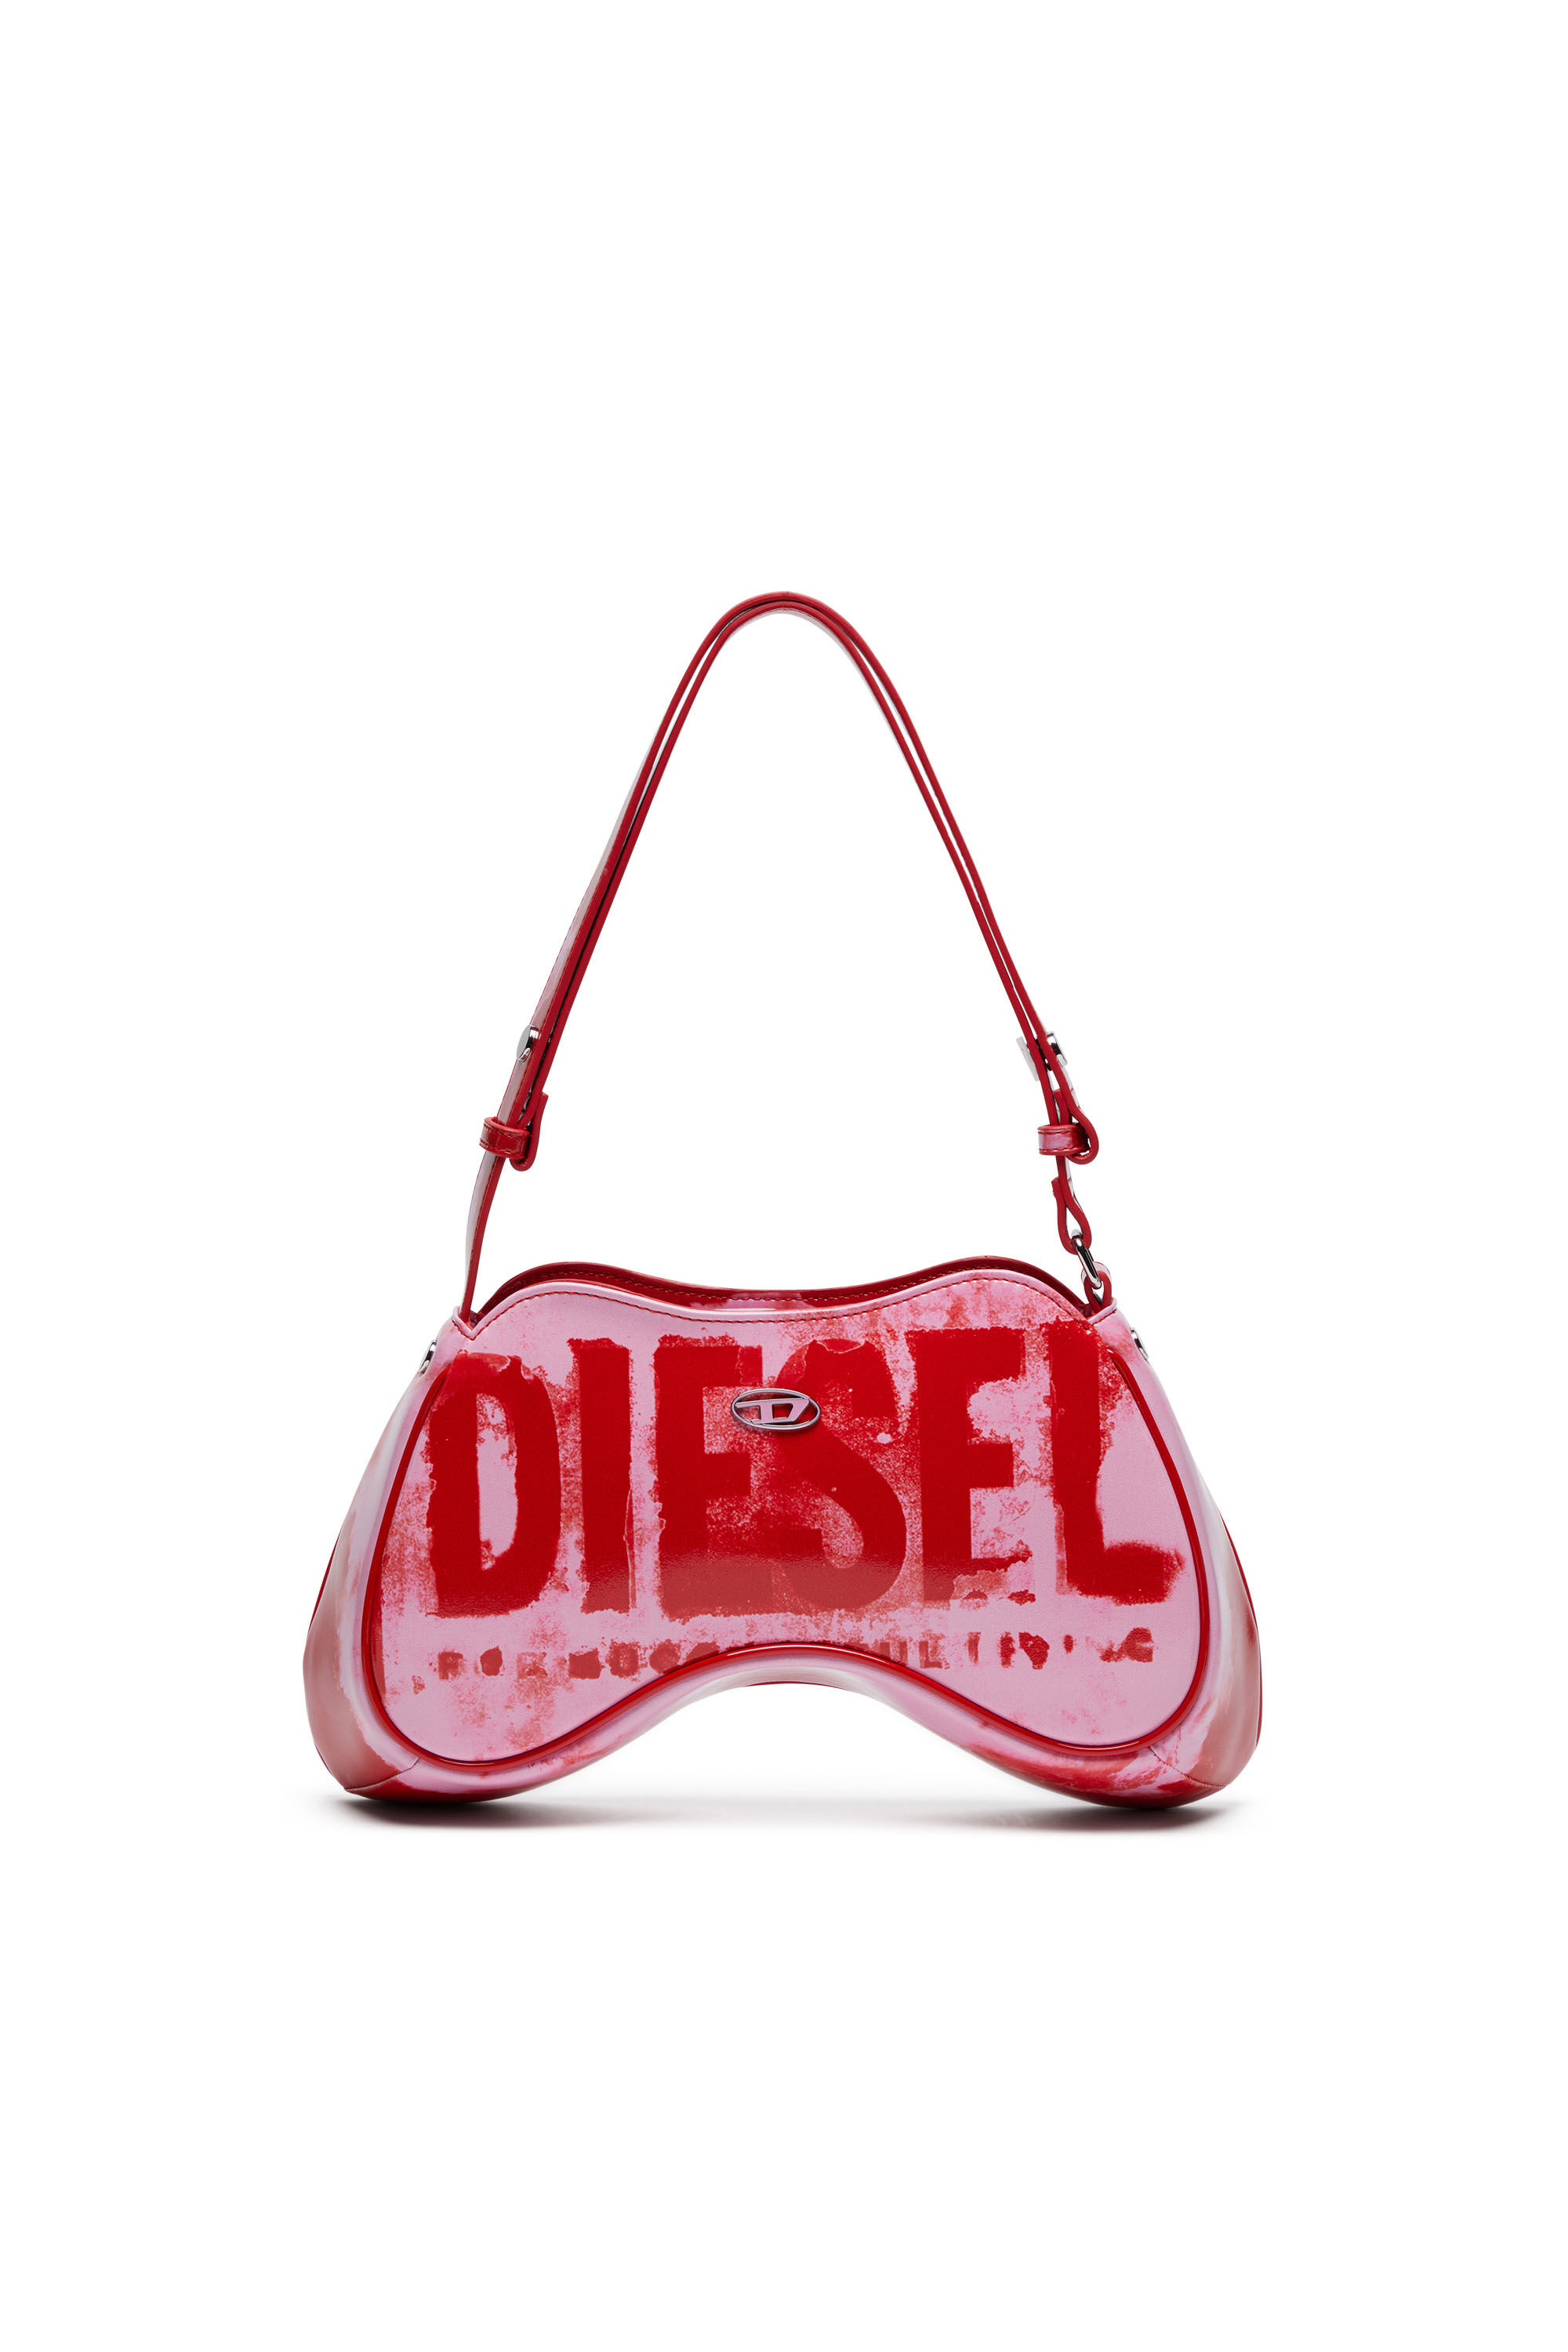 Diesel - PLAY SHOULDER, ピンク/レッド - Image 1